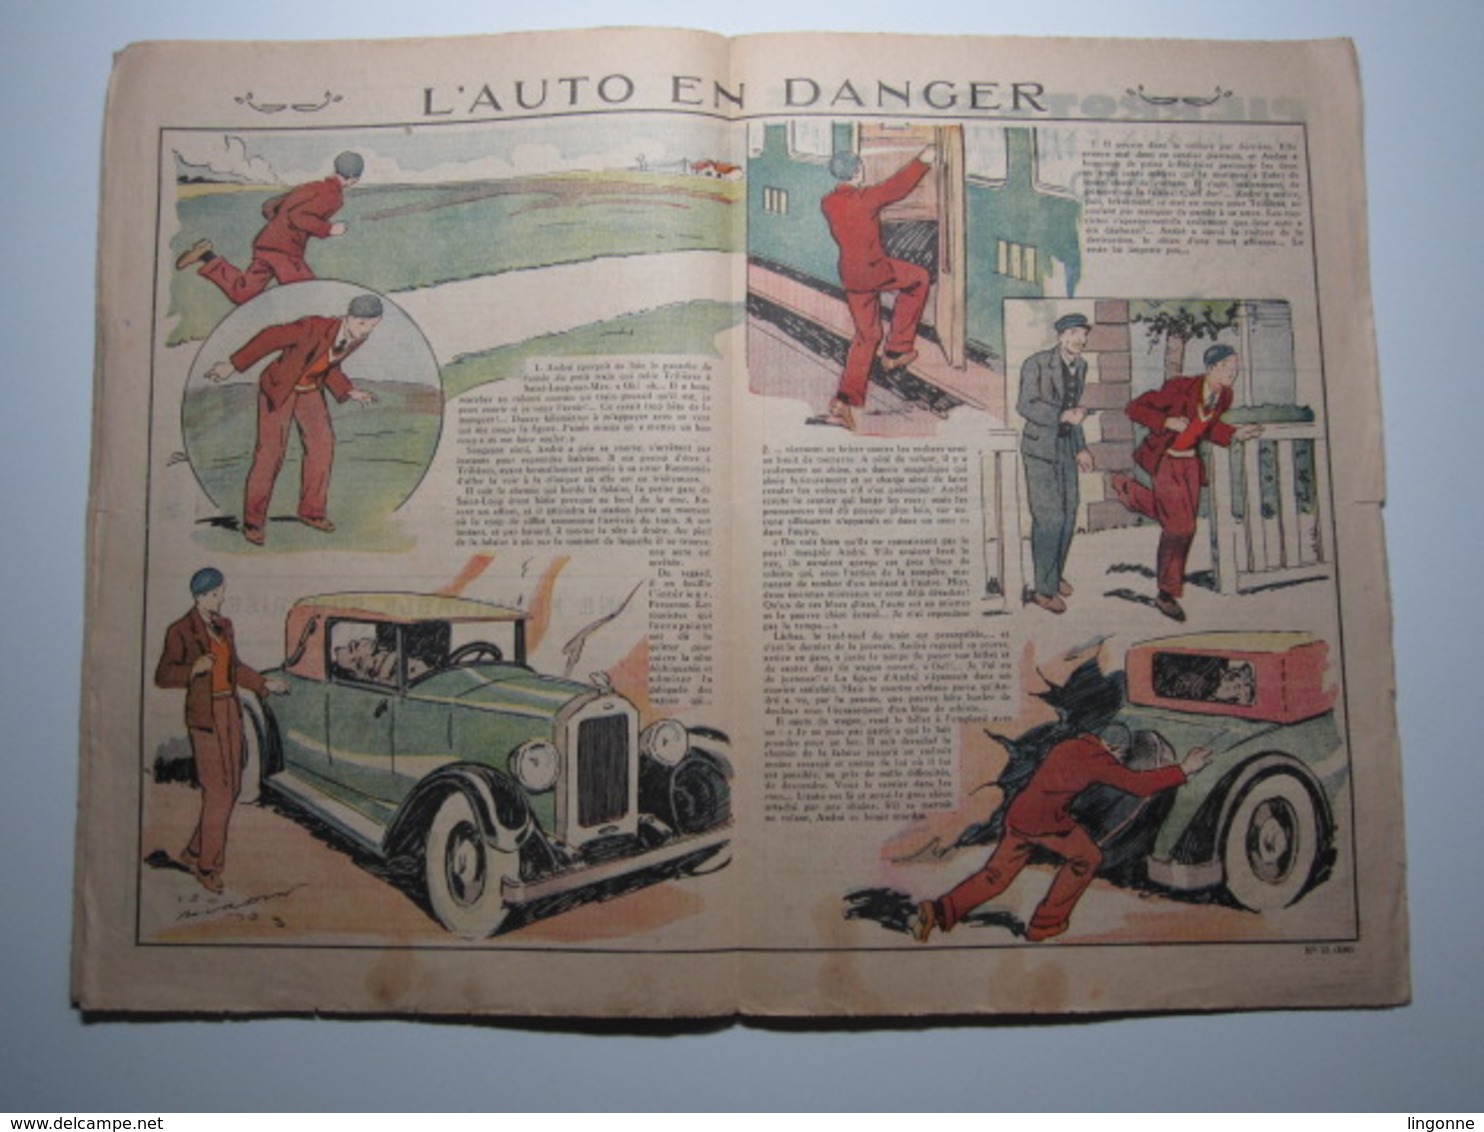 14 Avril 1935 PIERROT JOURNAL DES GARÇONS 25Cts - Pierrot